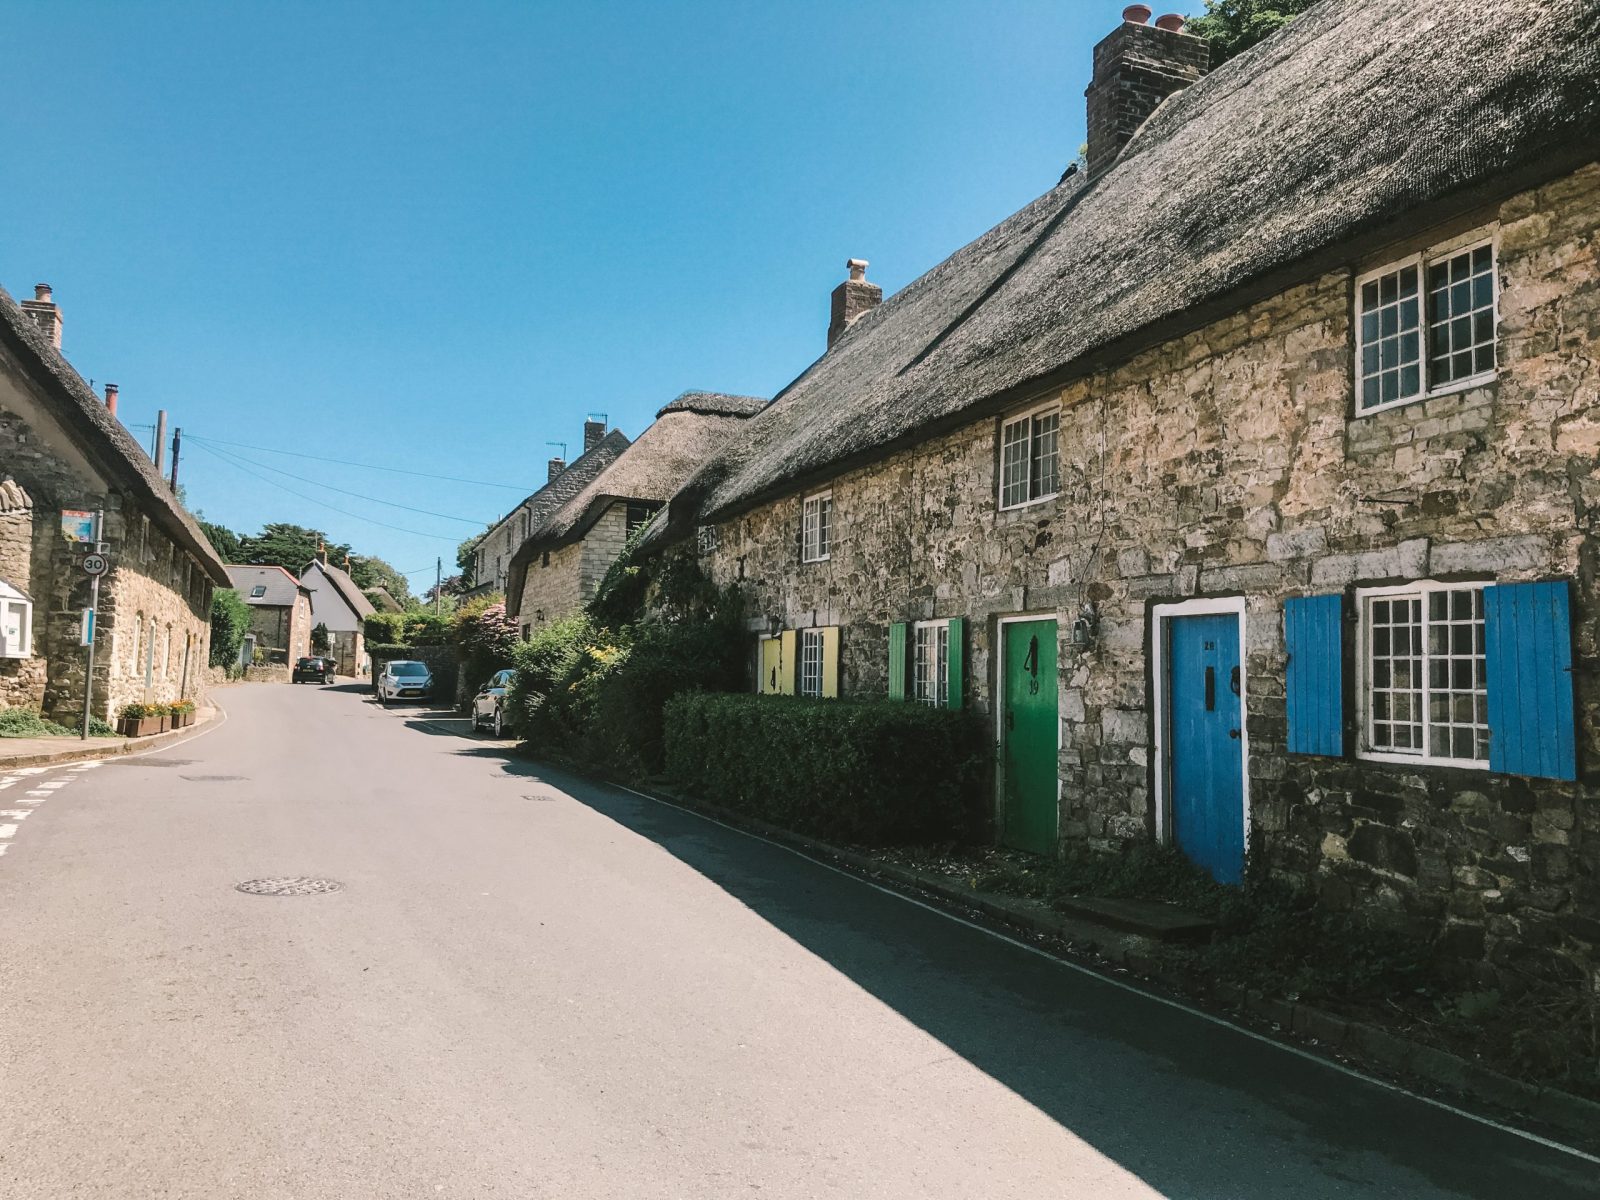 Best villages in Dorset 10 Prettiest locations